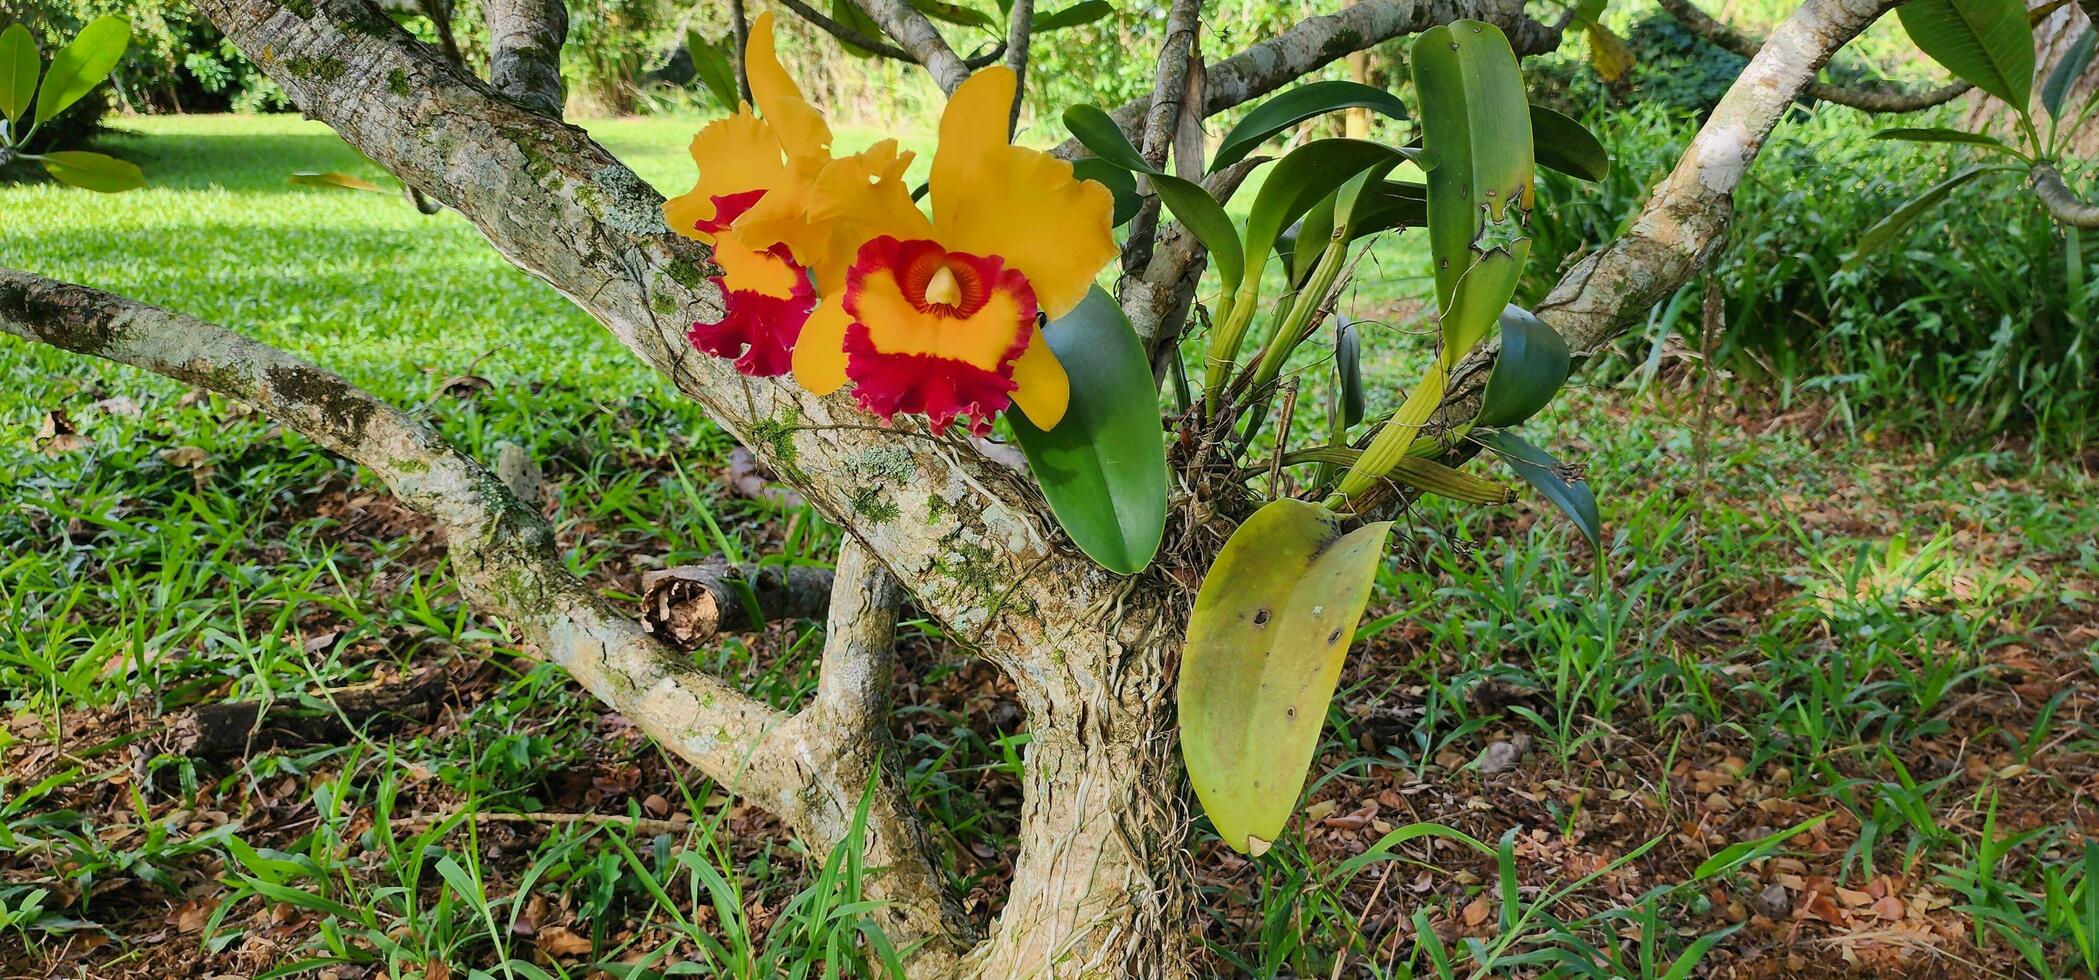 cattleya willette wong orchidée croissance dans le Cour photo